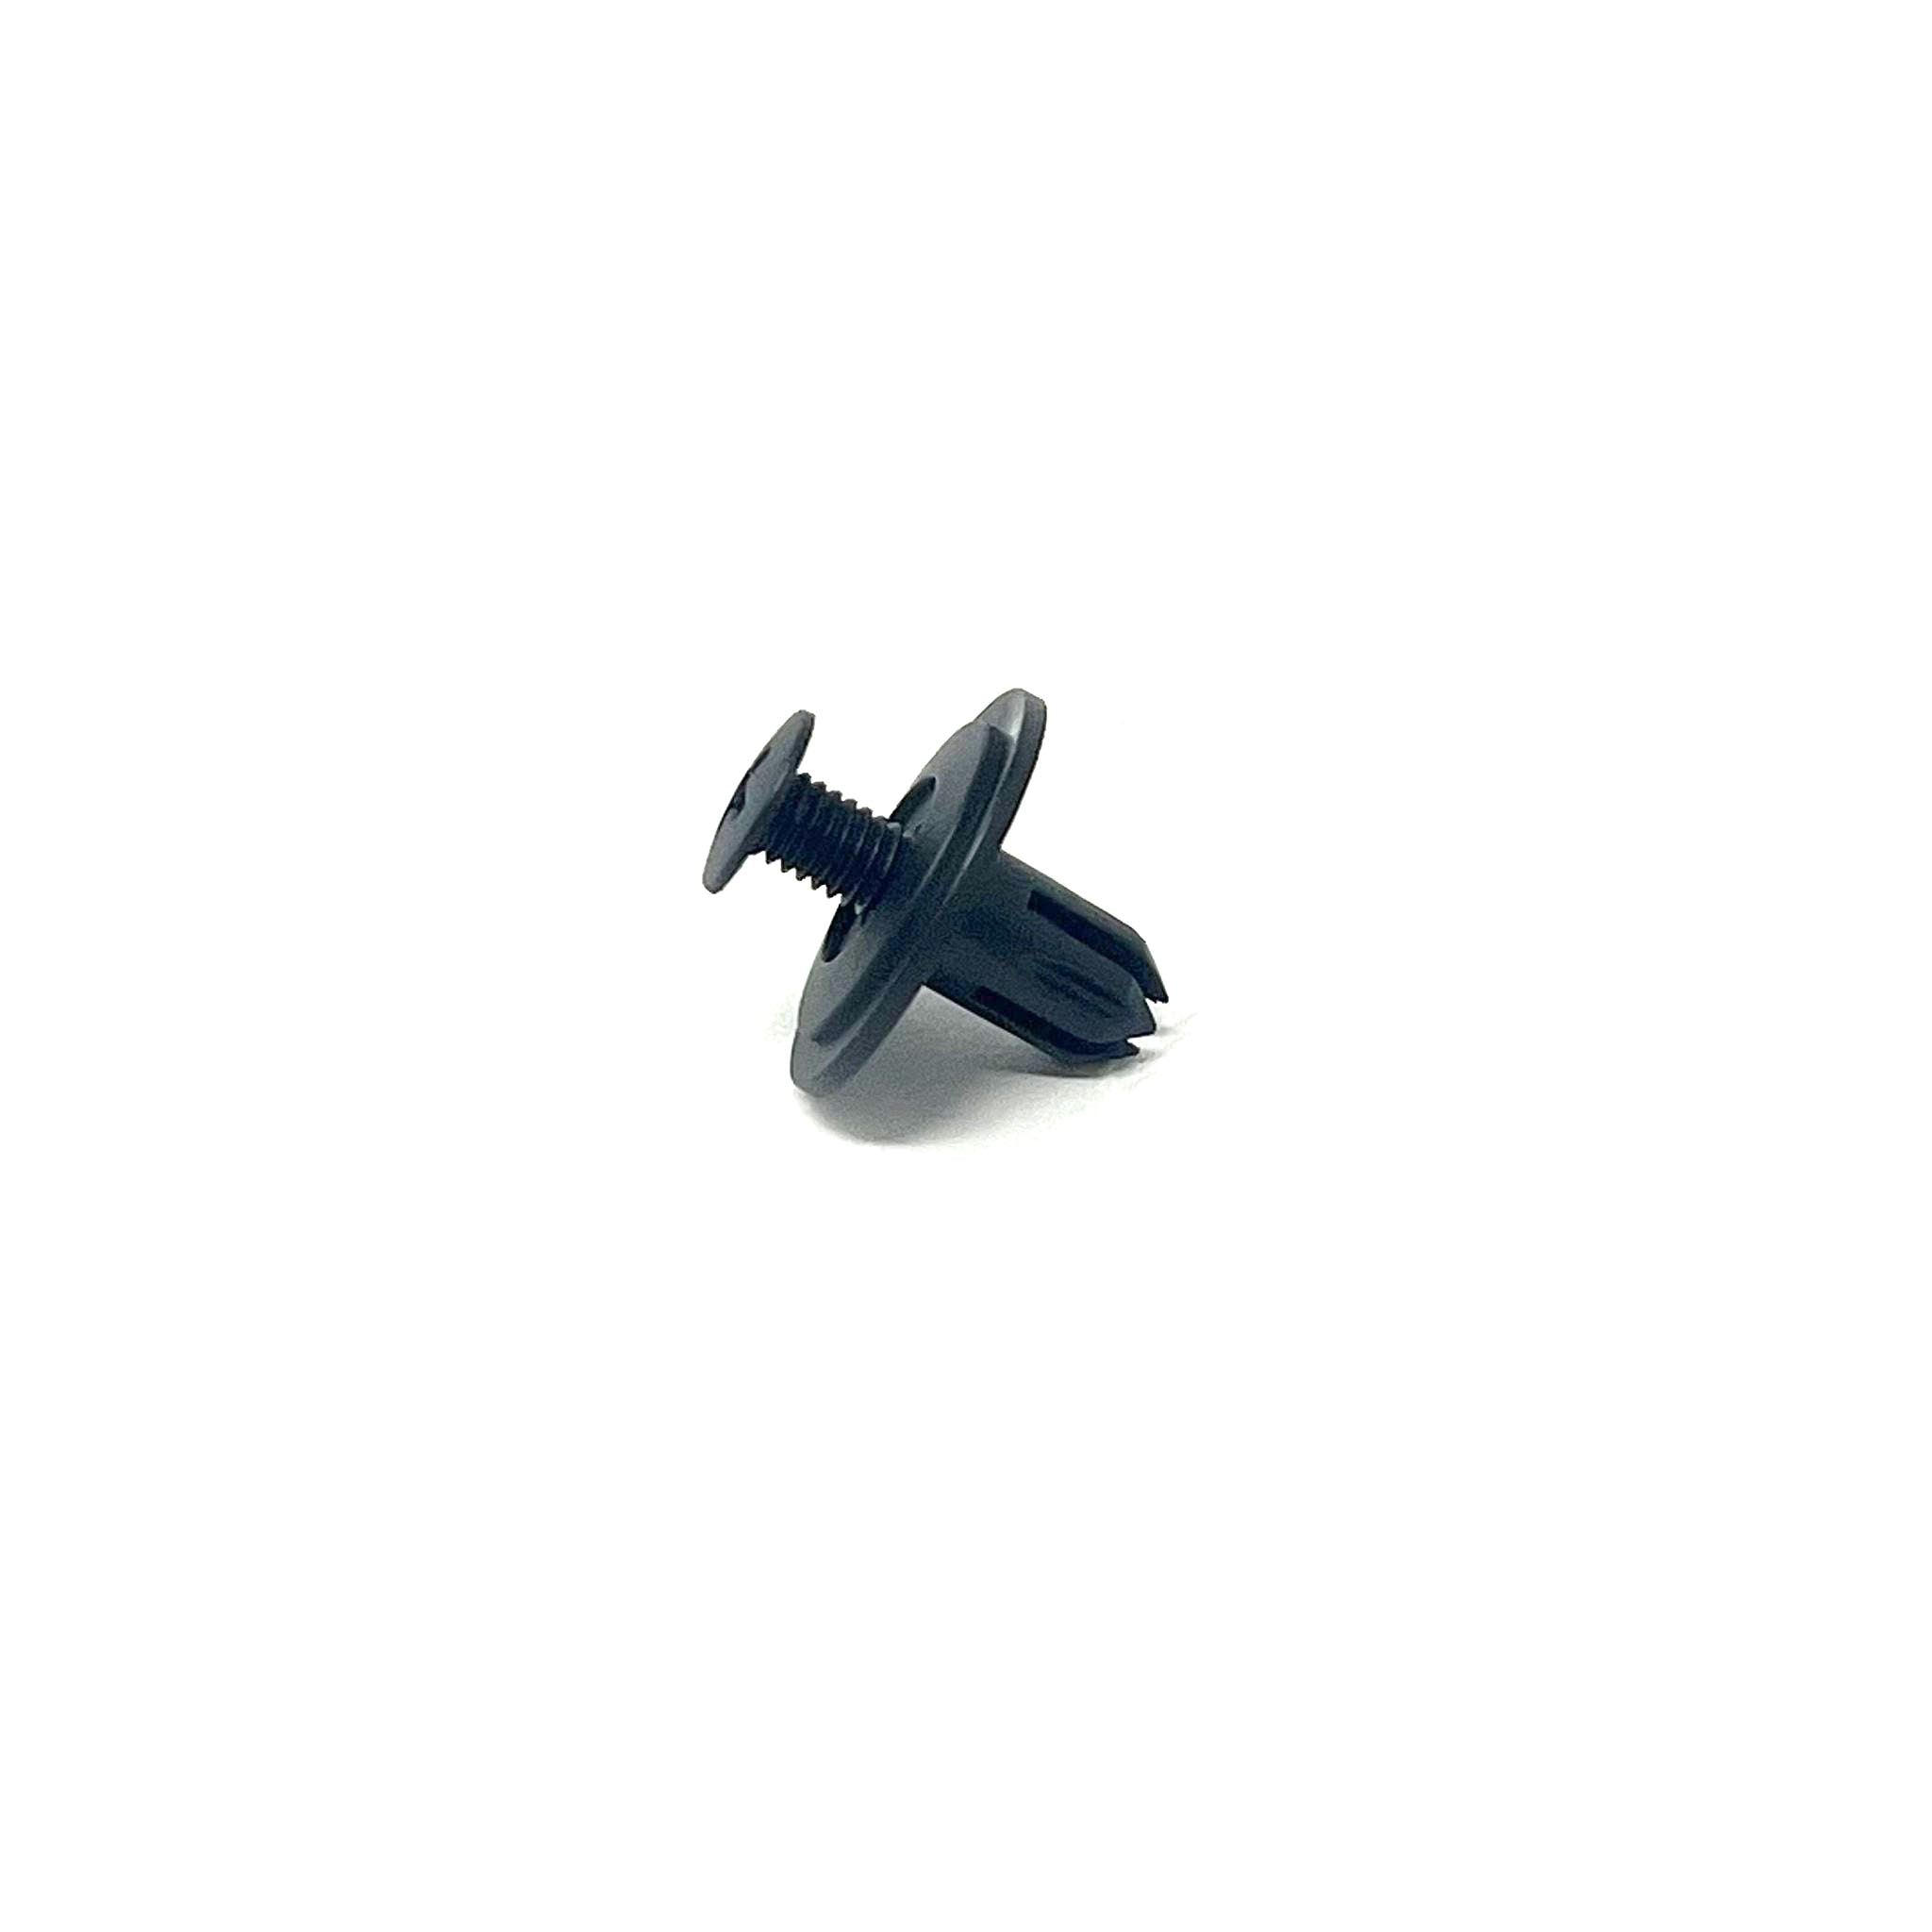 Black Nylon Phillips Screw Ret - 6mm Hole Size 11mm Stem Length (Pack of 25)